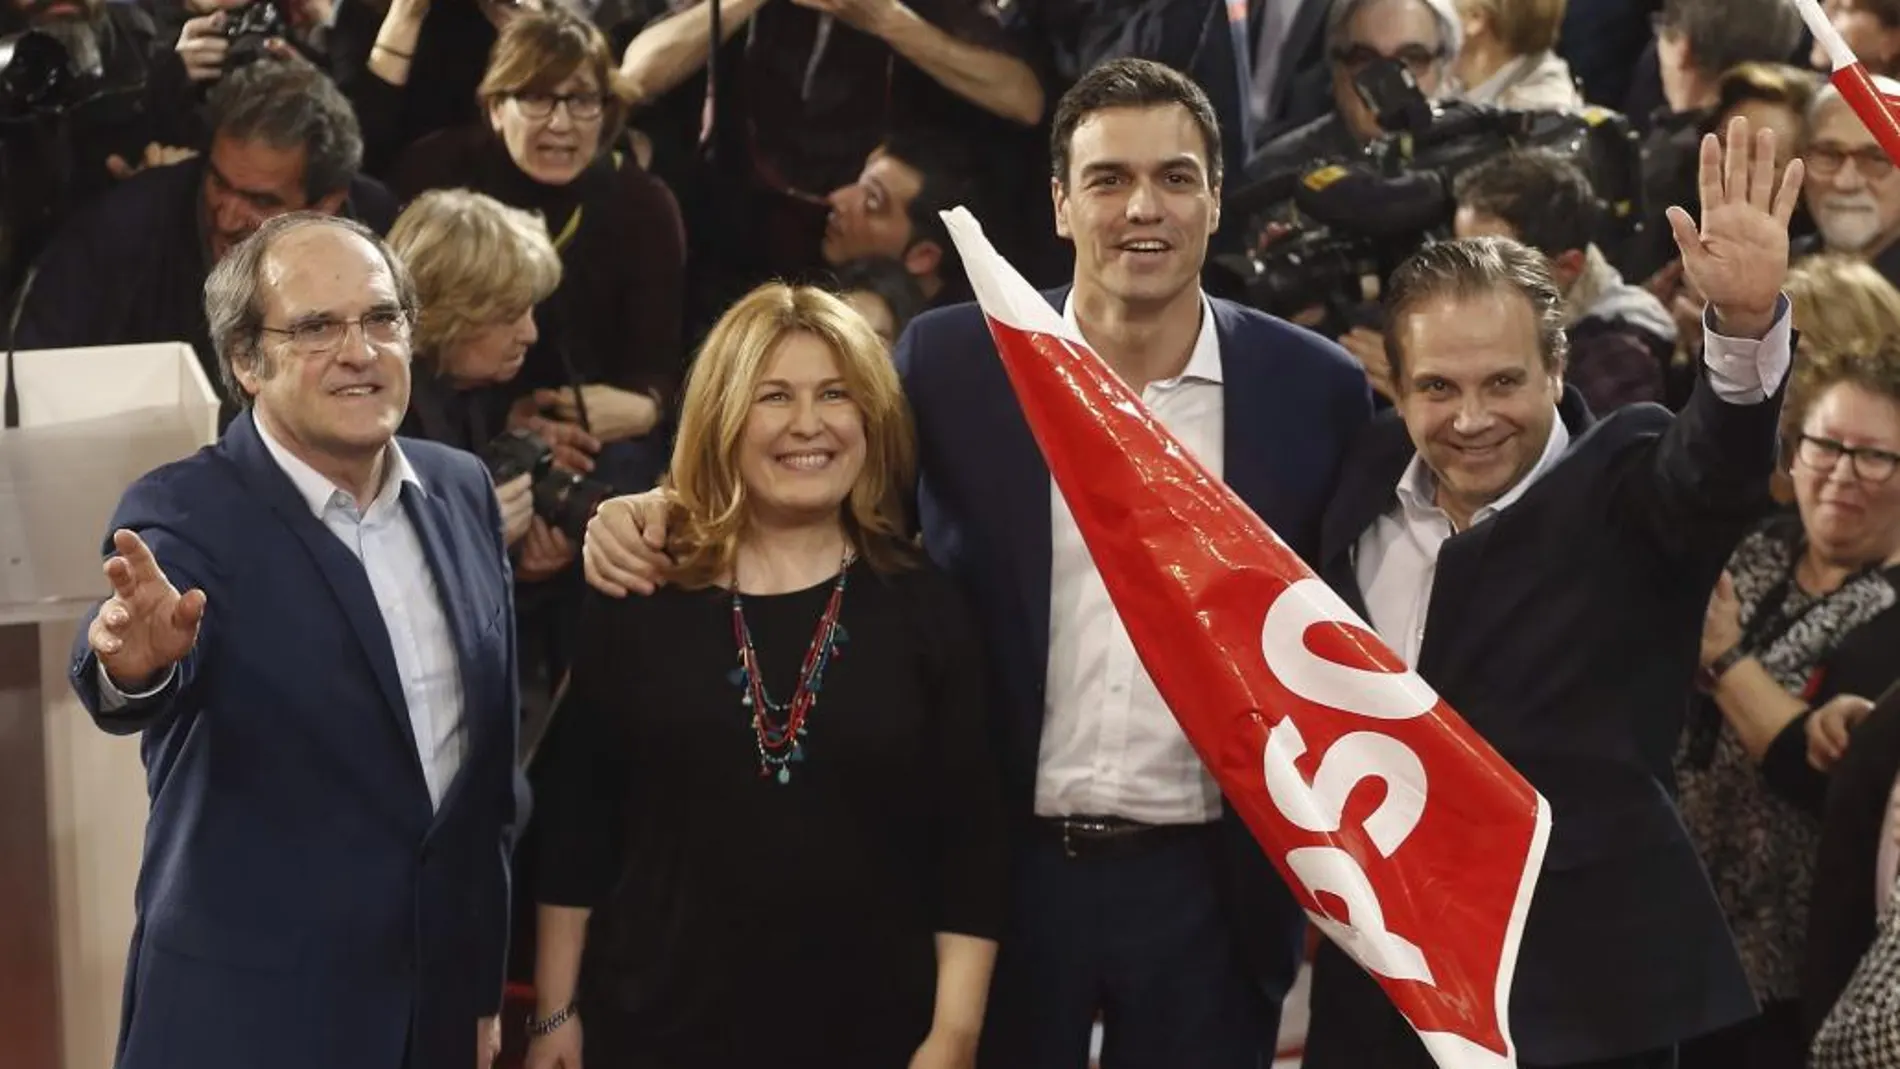 Presentación de Ángel Gabilondo como candidato socialista a la Comunidad de Madrid